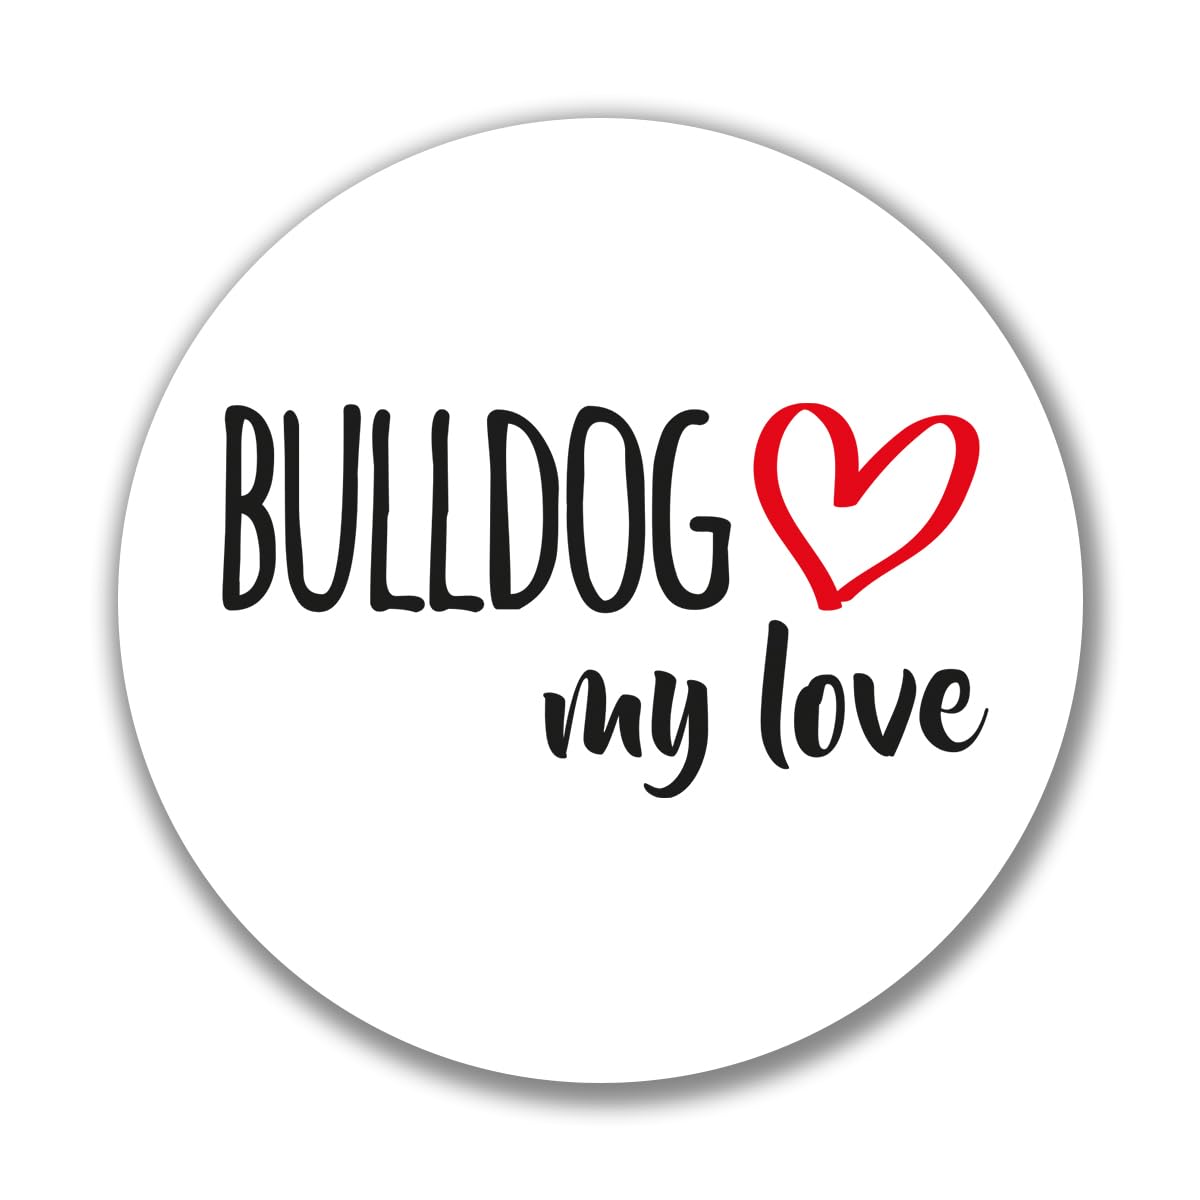 Huuraa Aufkleber Bulldog My Love Sticker Größe 10cm mit Motiv für Hundefreunde Geschenk Idee für Freunde und Familie von Huuraa